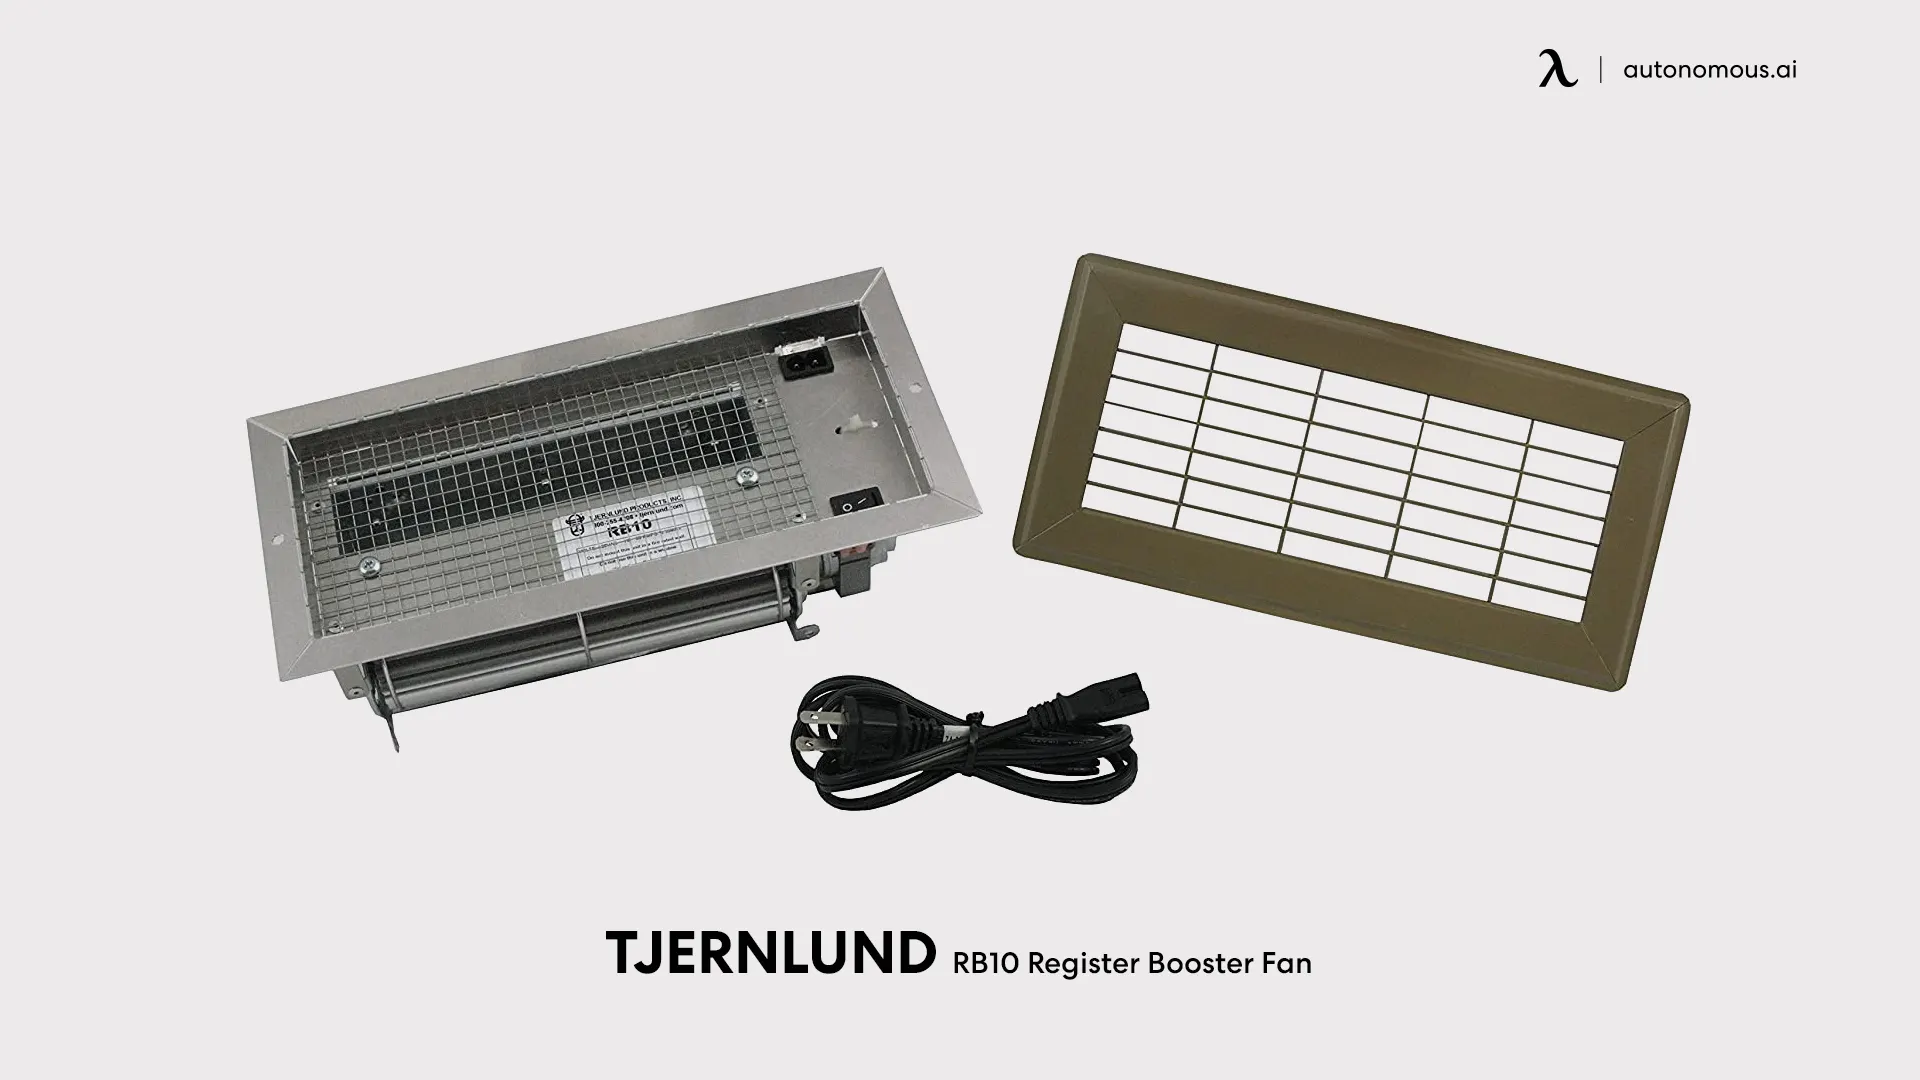 RB10 Register Booster Fan by Tjernlund